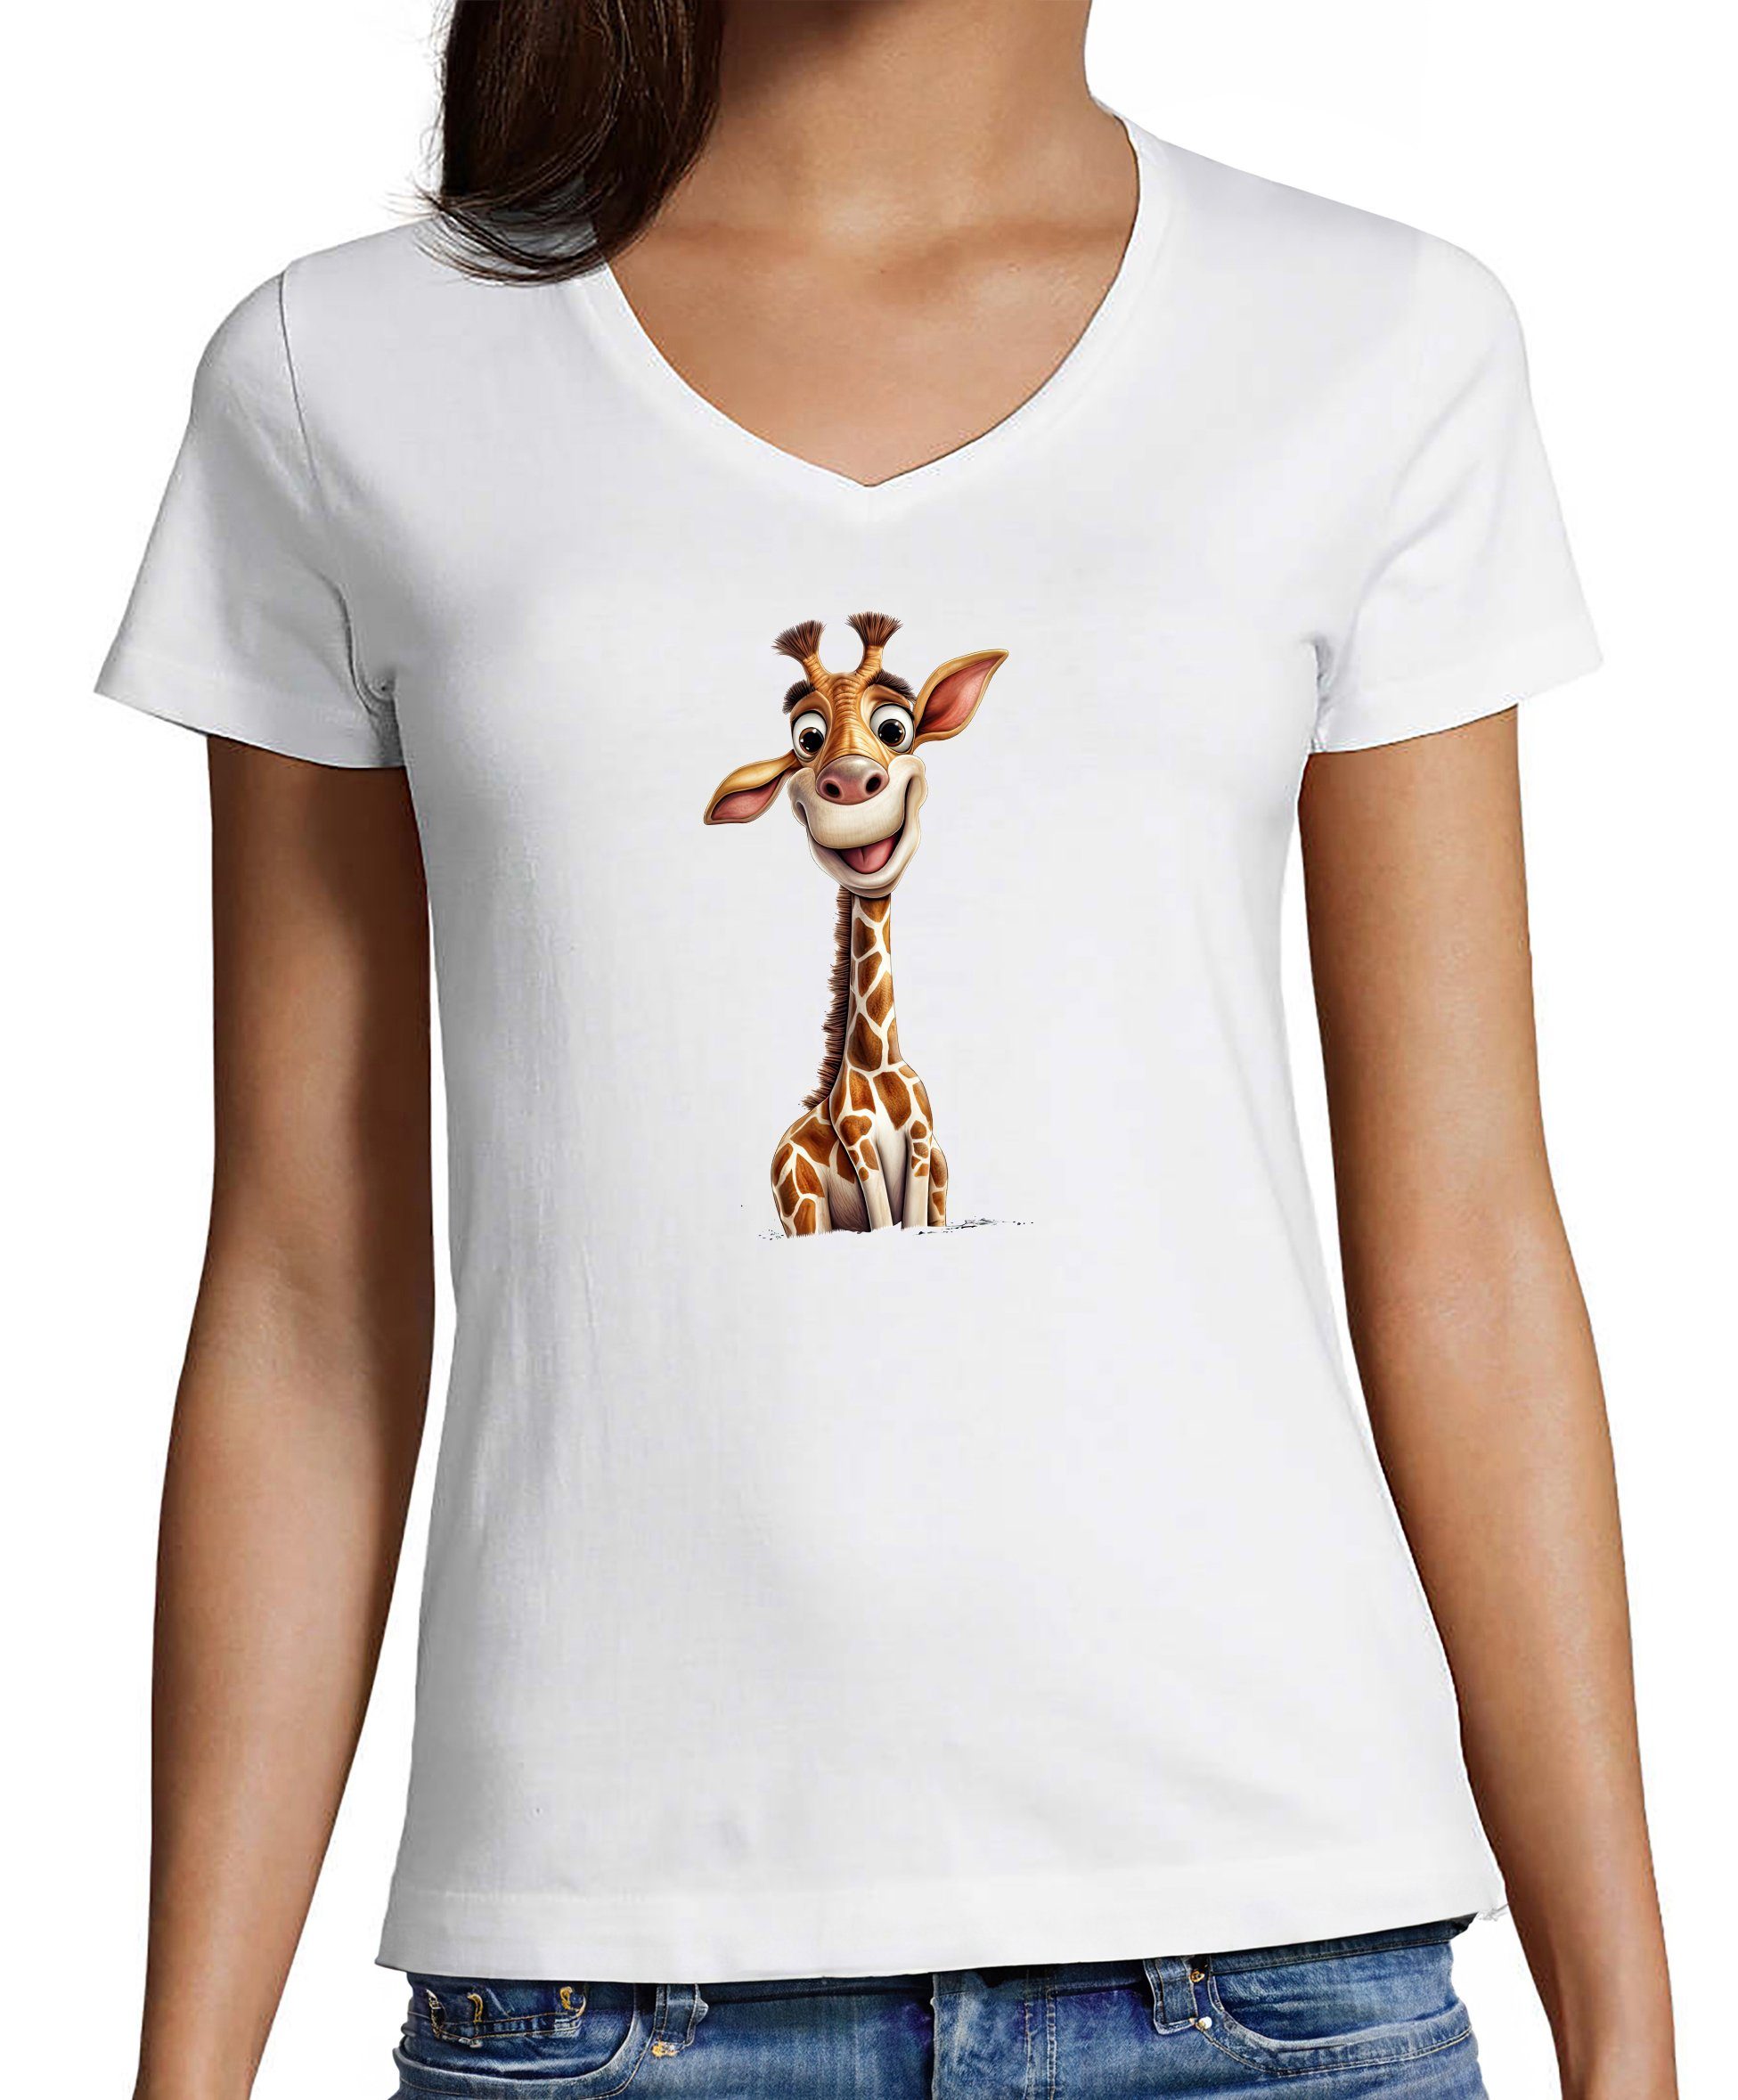 MyDesign24 T-Shirt Damen Wildtier Print Shirt - Baby Giraffe V-Ausschnitt Baumwollshirt mit Aufdruck Slim Fit, i273 weiss